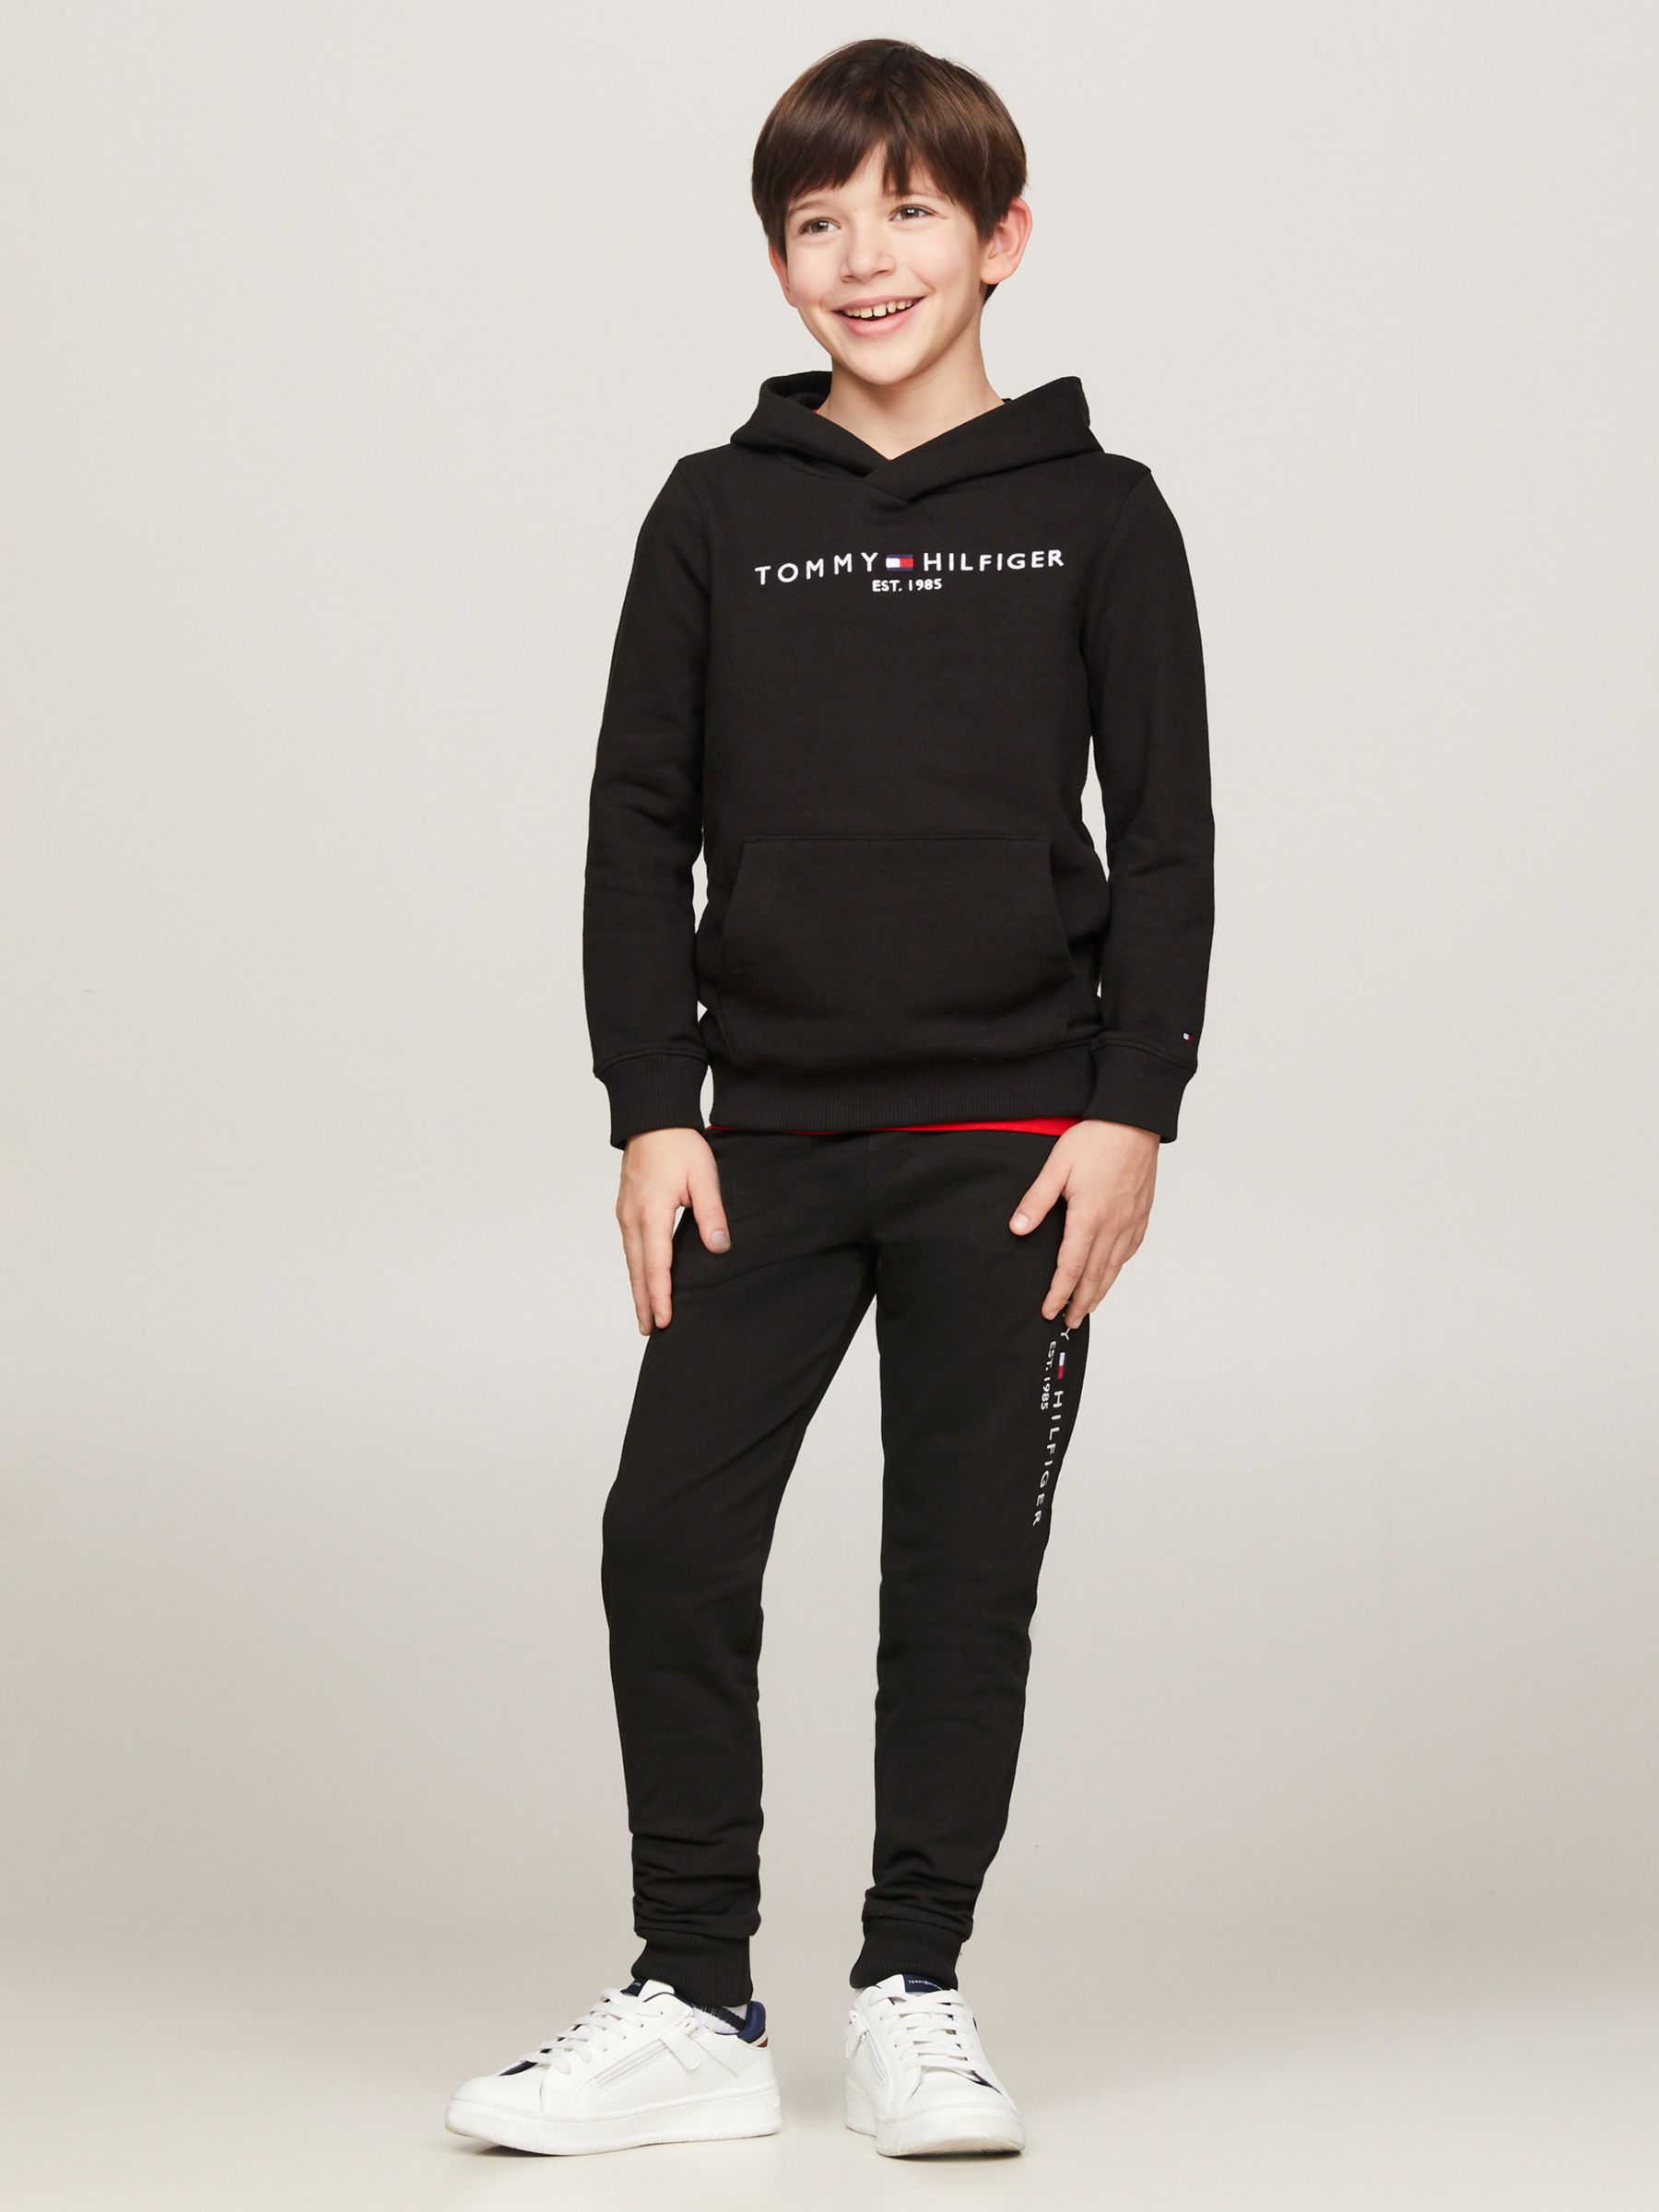 Tommy Hilfiger Kids' Essential Pullover Hoodie, Black, 3 years